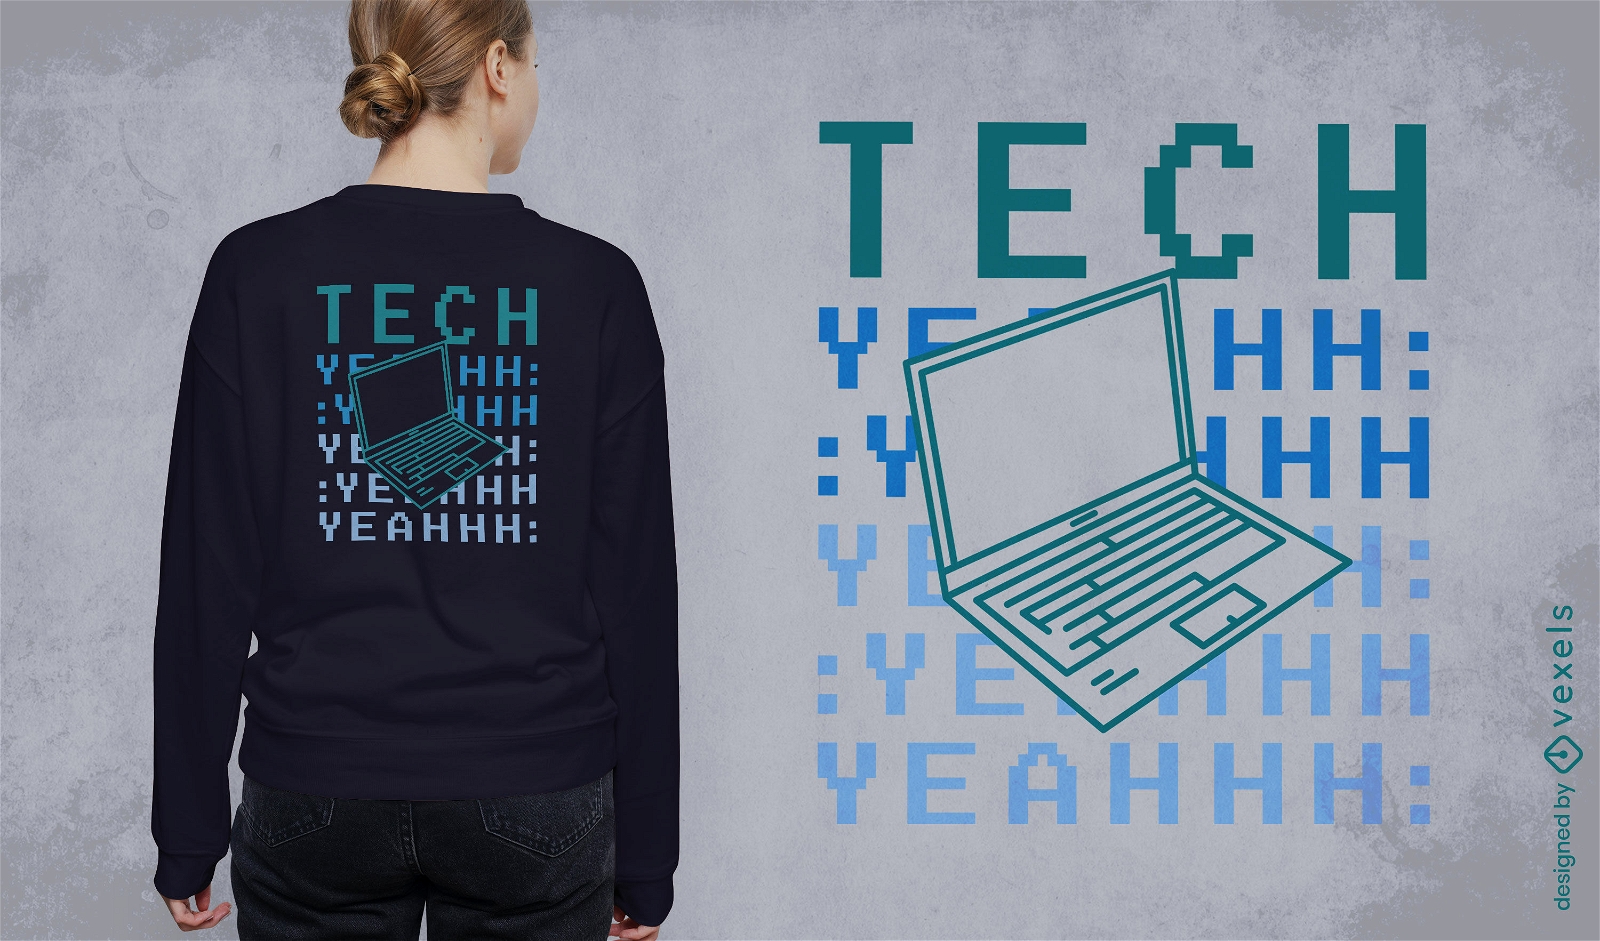 Dise?o de camiseta de computadora tecnol?gica.